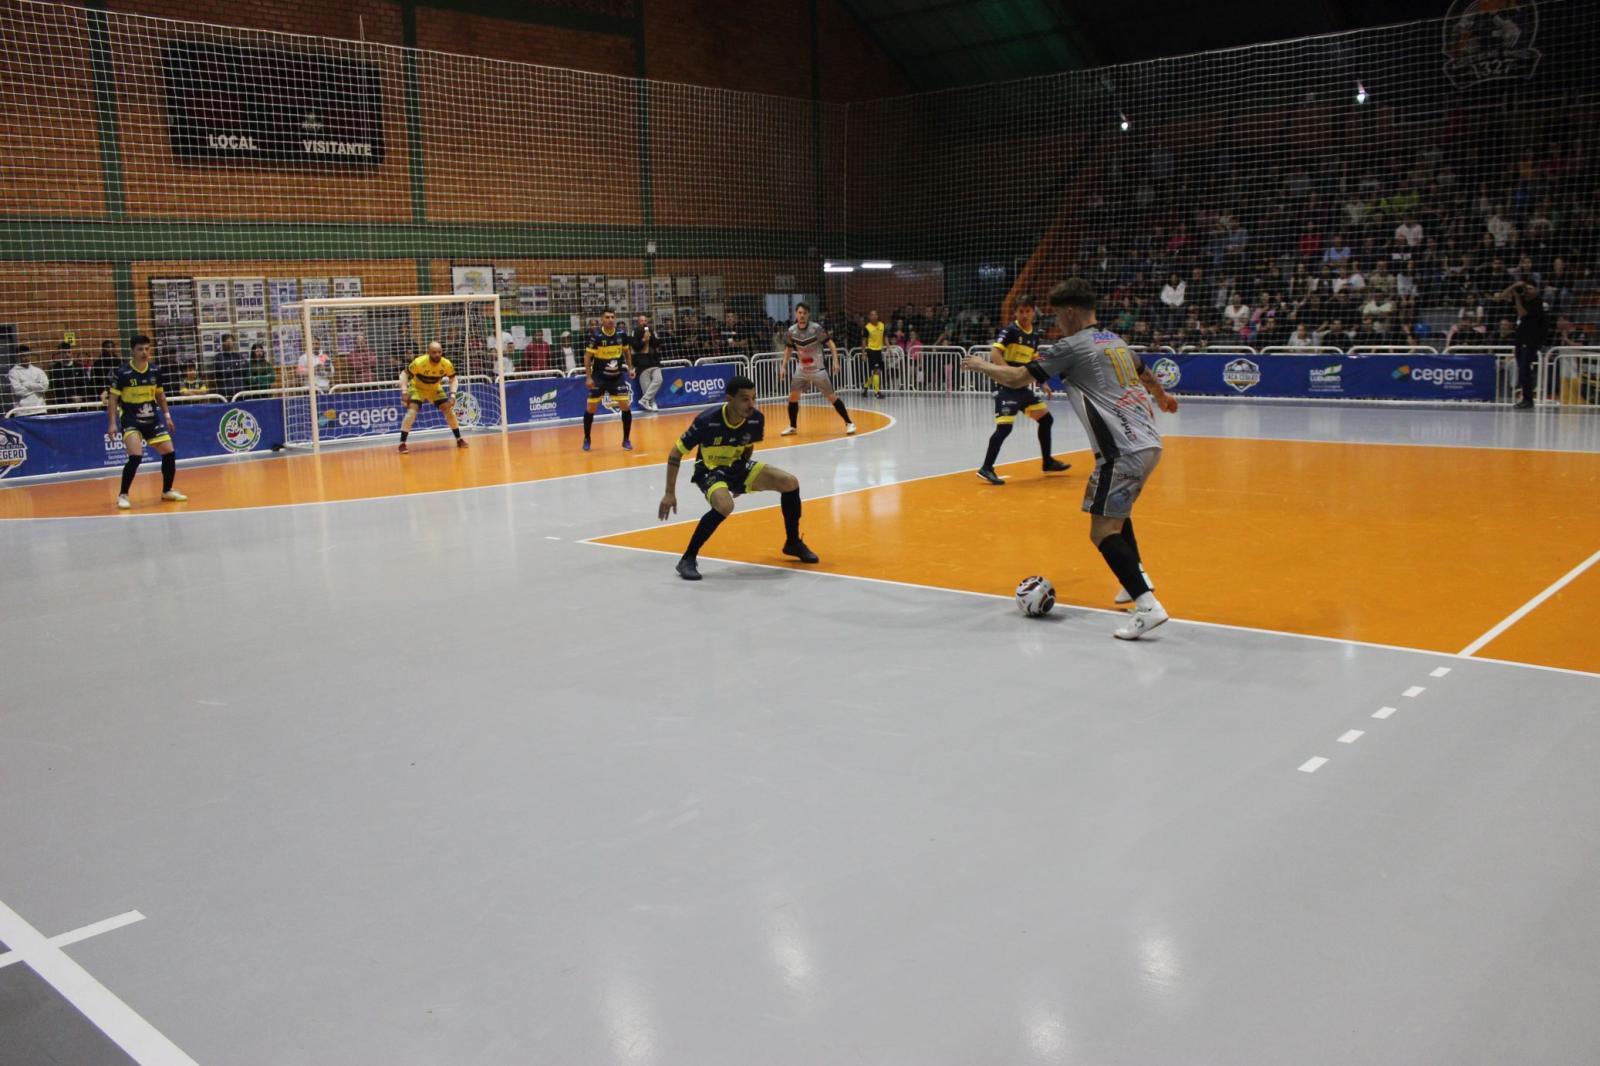 Cuzidos e Apec empatam e Consulado do Tigre vence o Resenha na abertura do Campeonato de Futsal Masculino de São Ludgero – 18ª Taça Cegero 2023